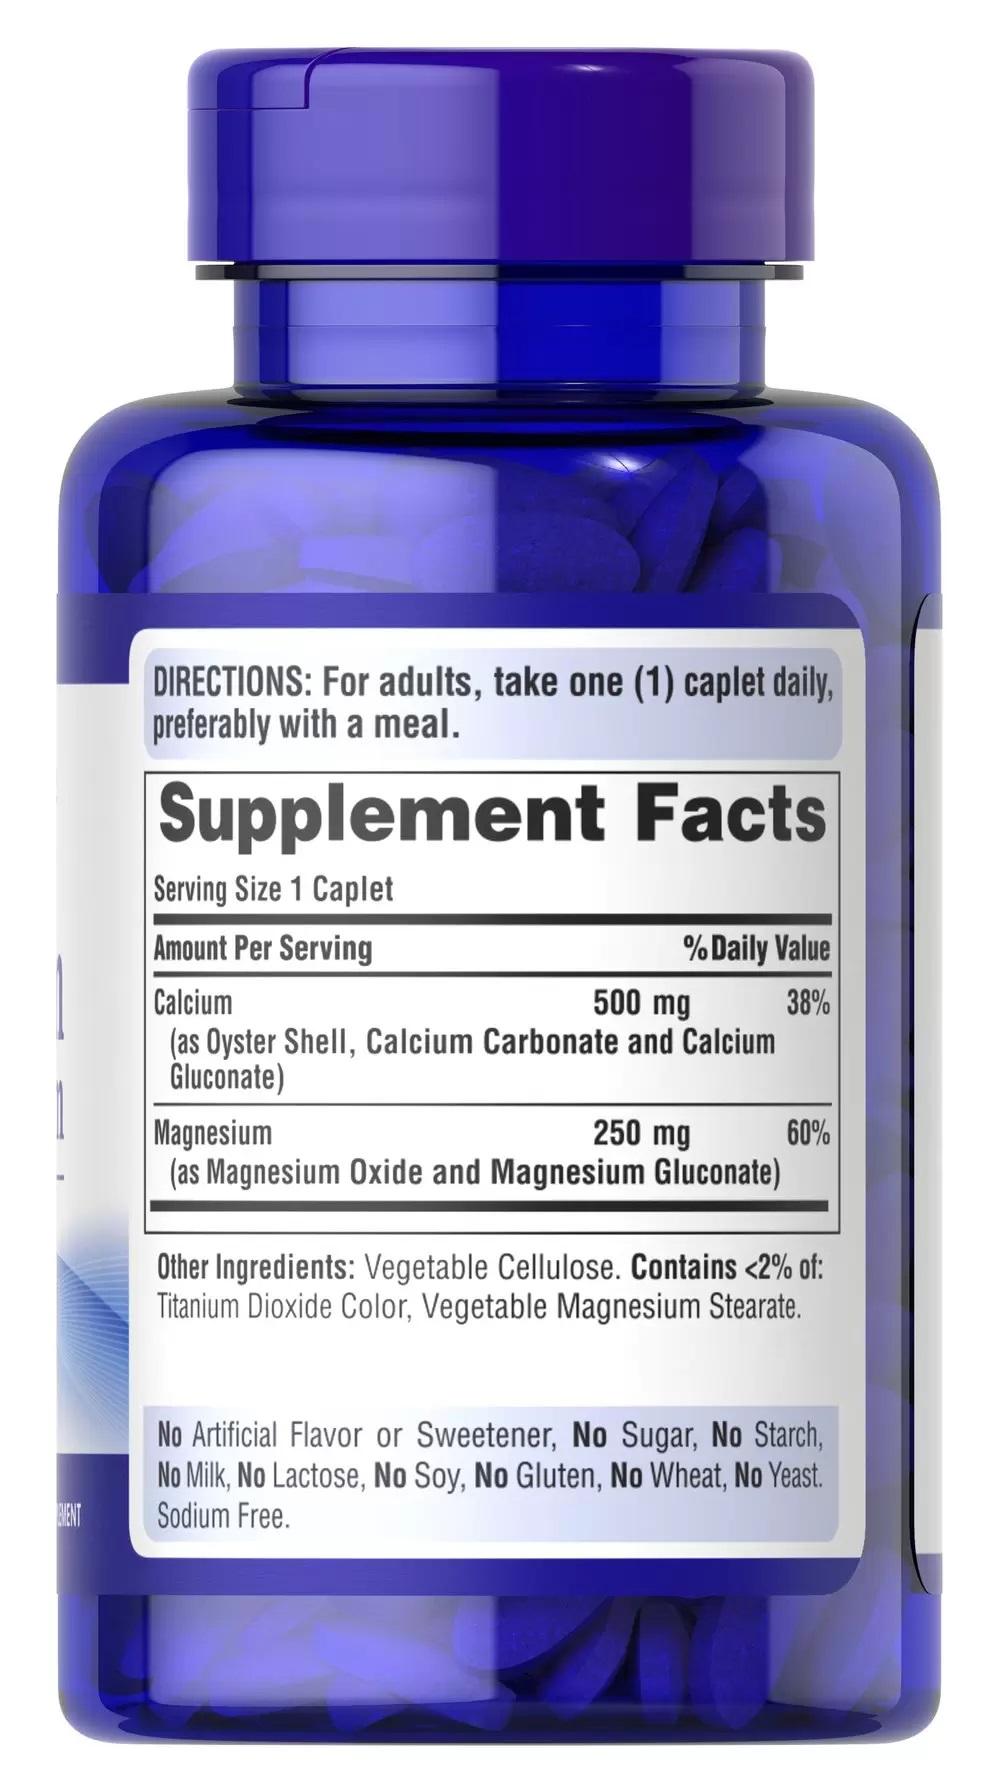 Calcium Magnesium 鈣+鎂 每日錠